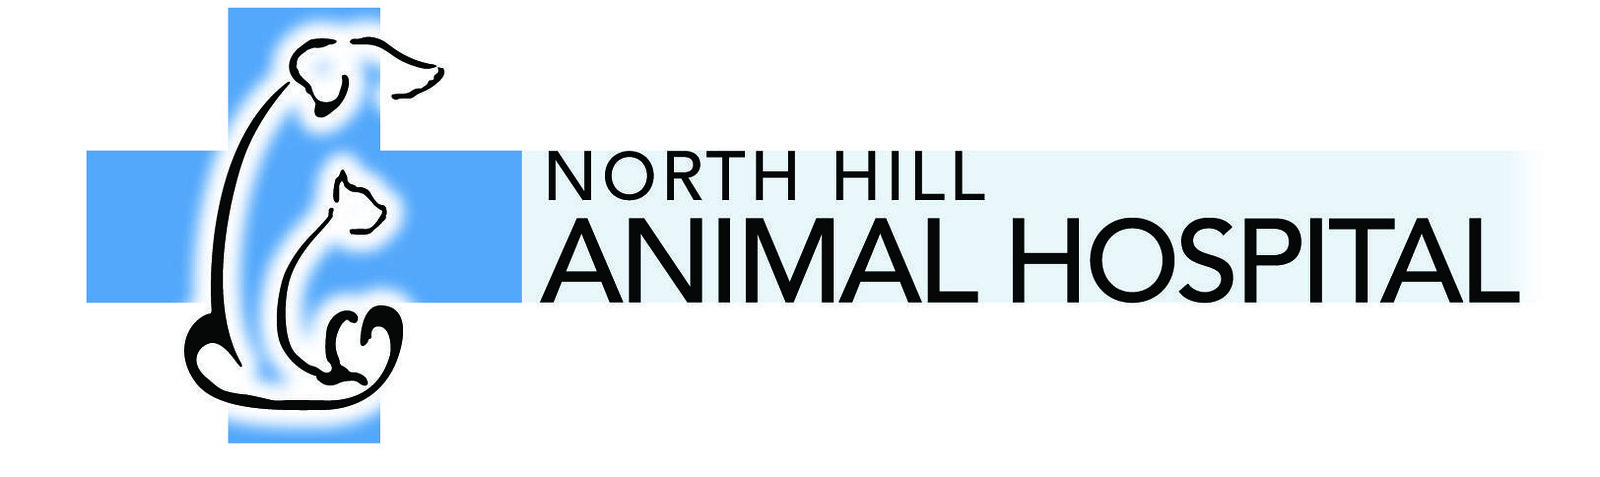 North Hill Animal Hospital | Flickr